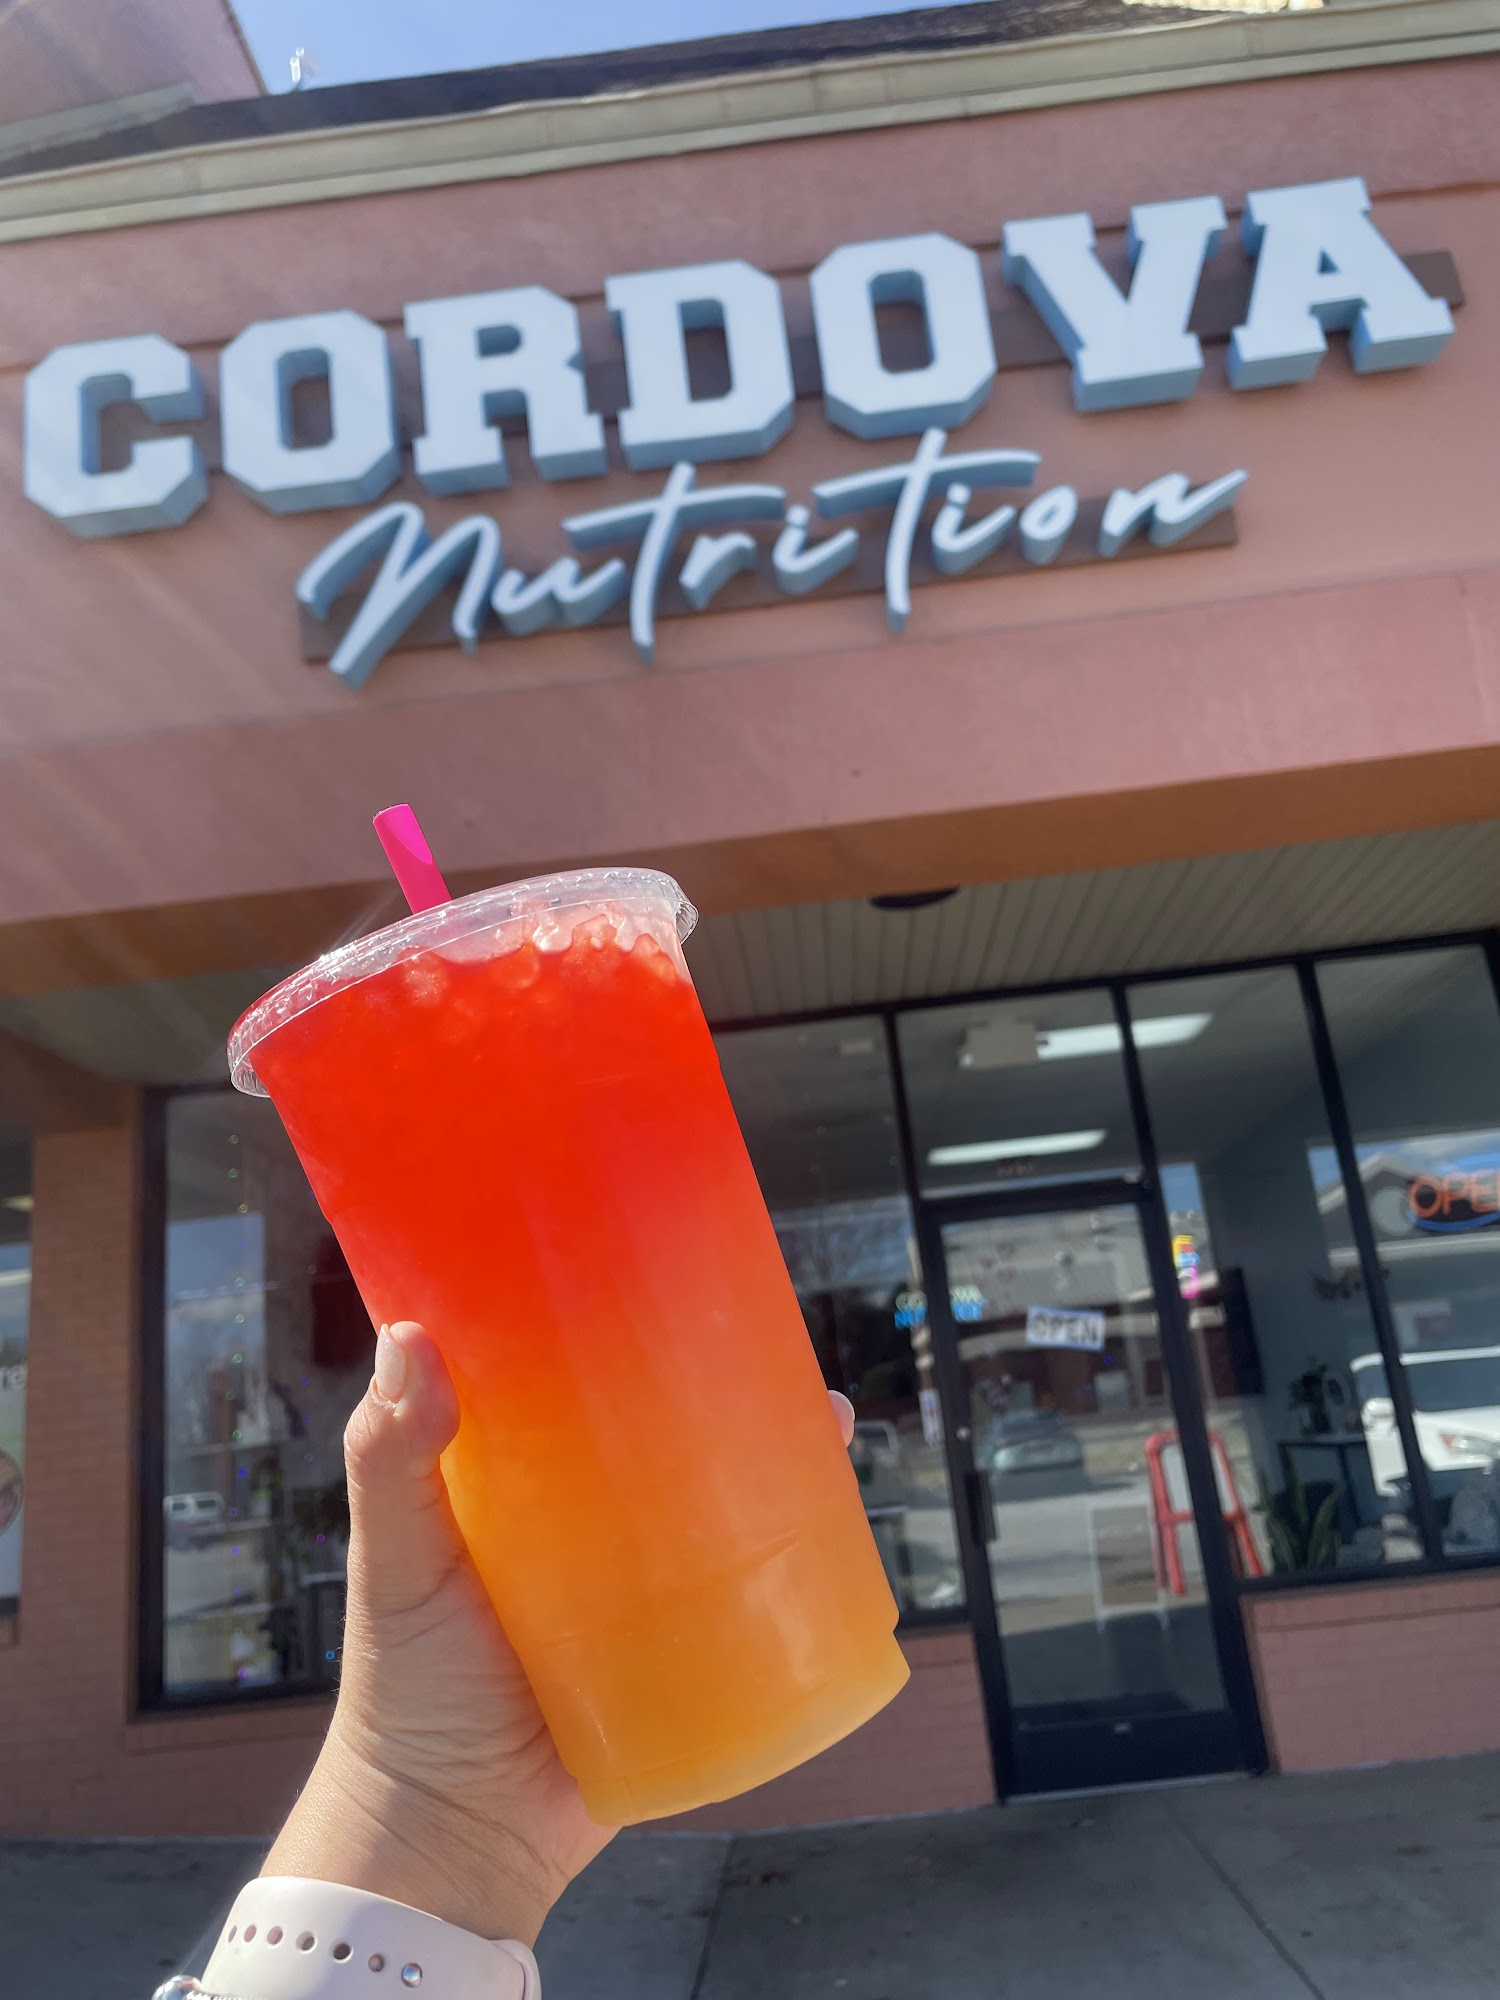 Cordova Nutrition